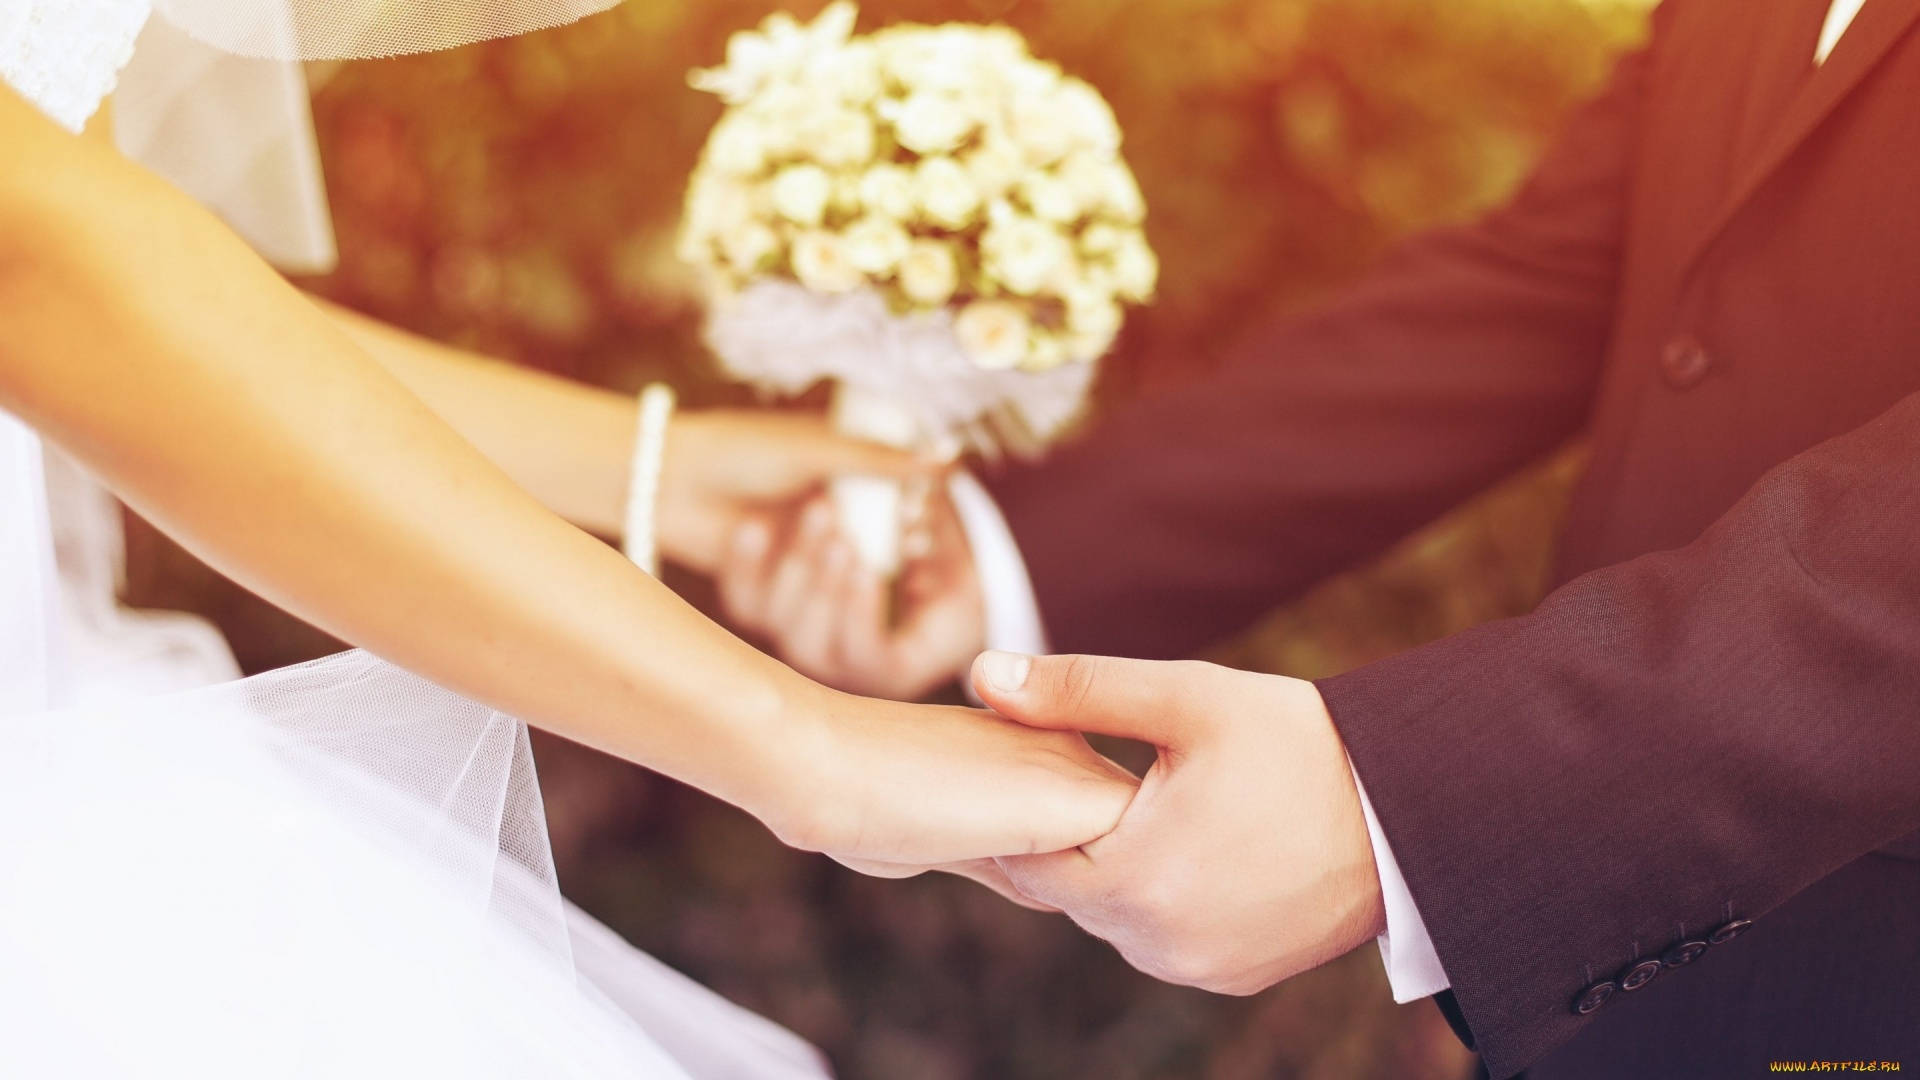 Holding Hands Wedding Photoshoot Background